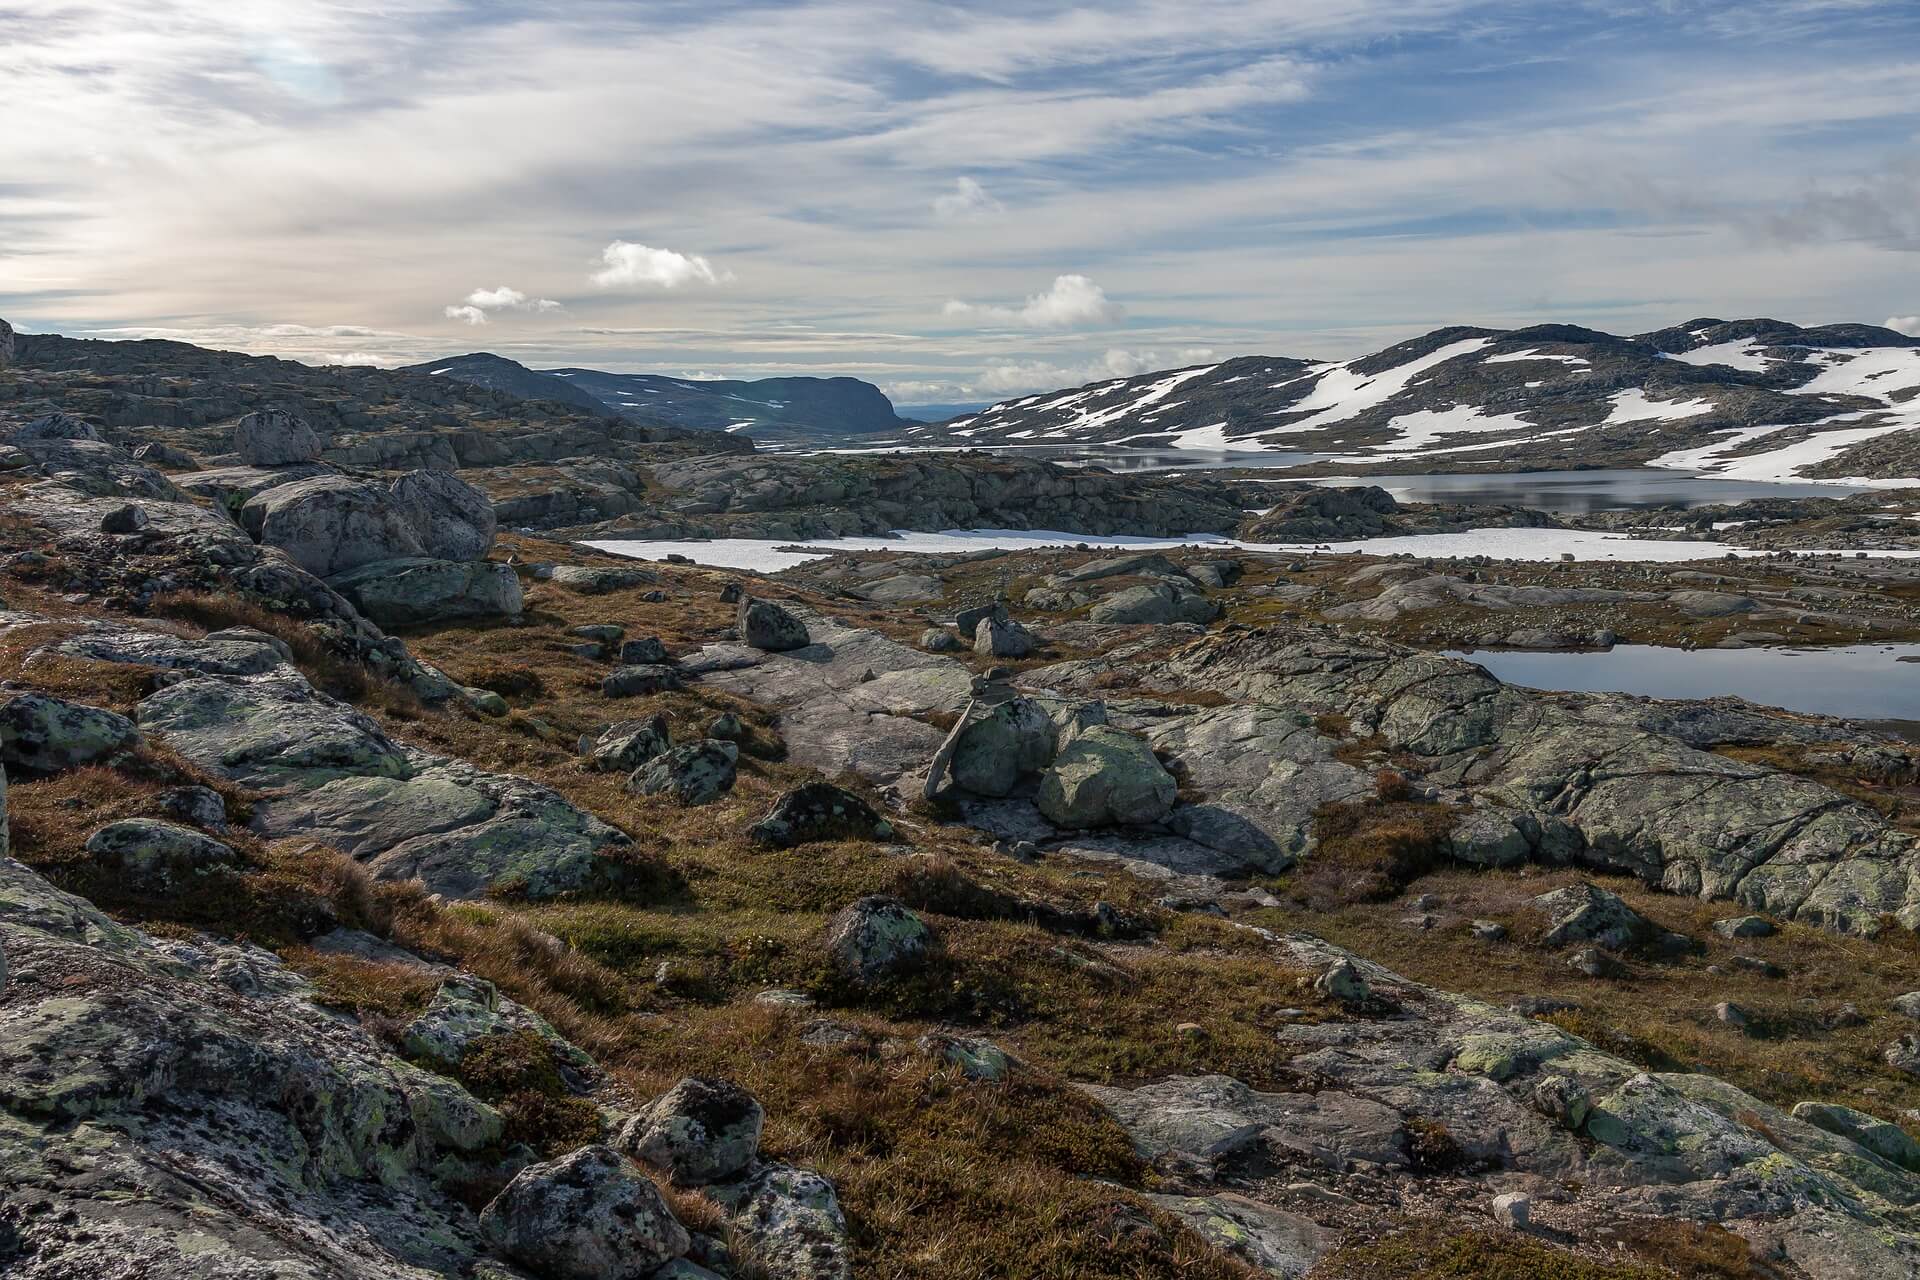 Hardangervidda high plateau